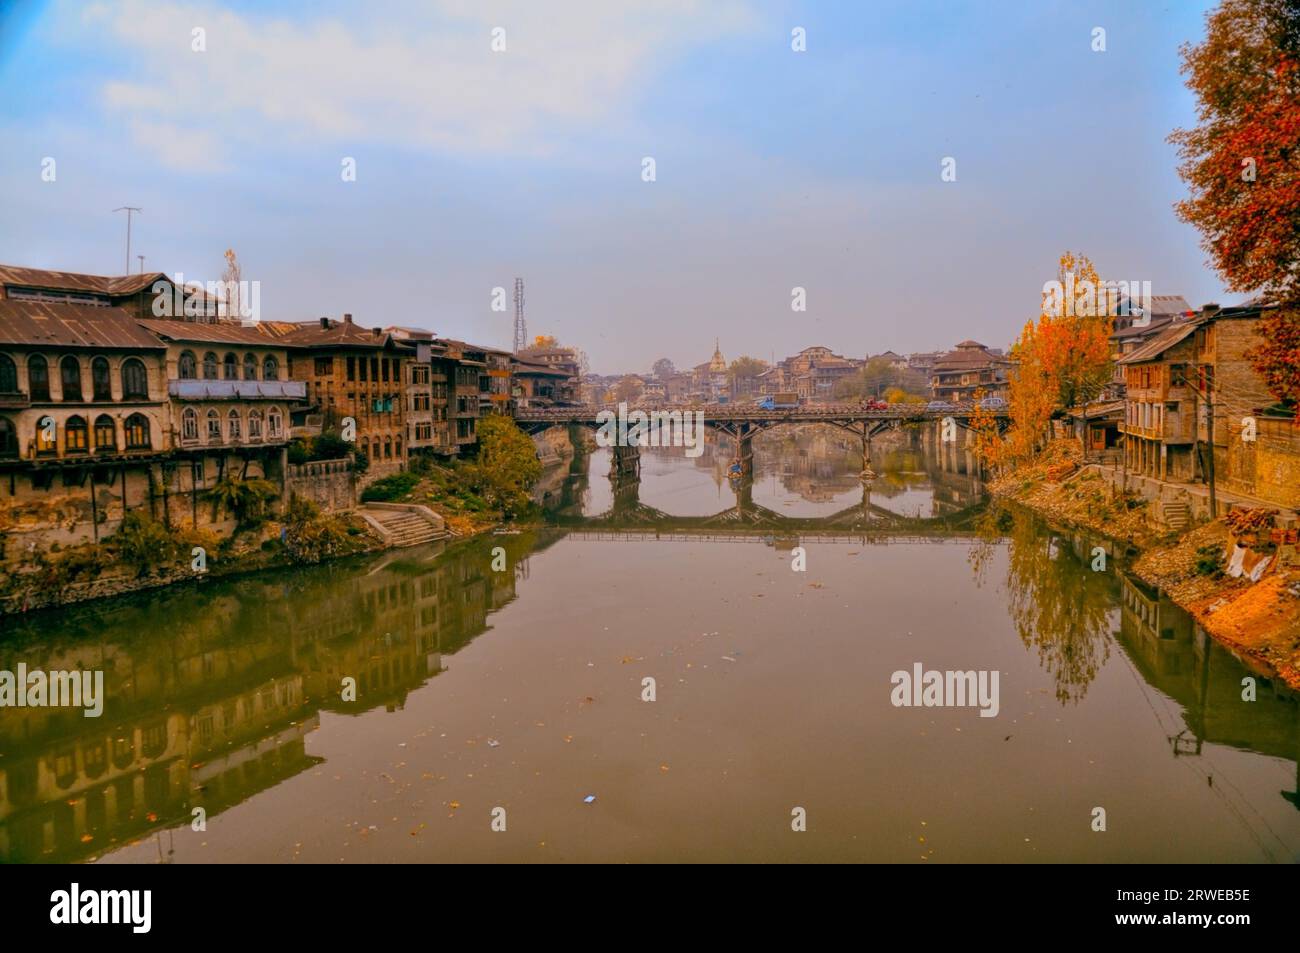 Vista panoramica del ponte sul fiume Jhelum nella città di Srinagar in India, capitale estiva del Jammu e Kashmir Foto Stock